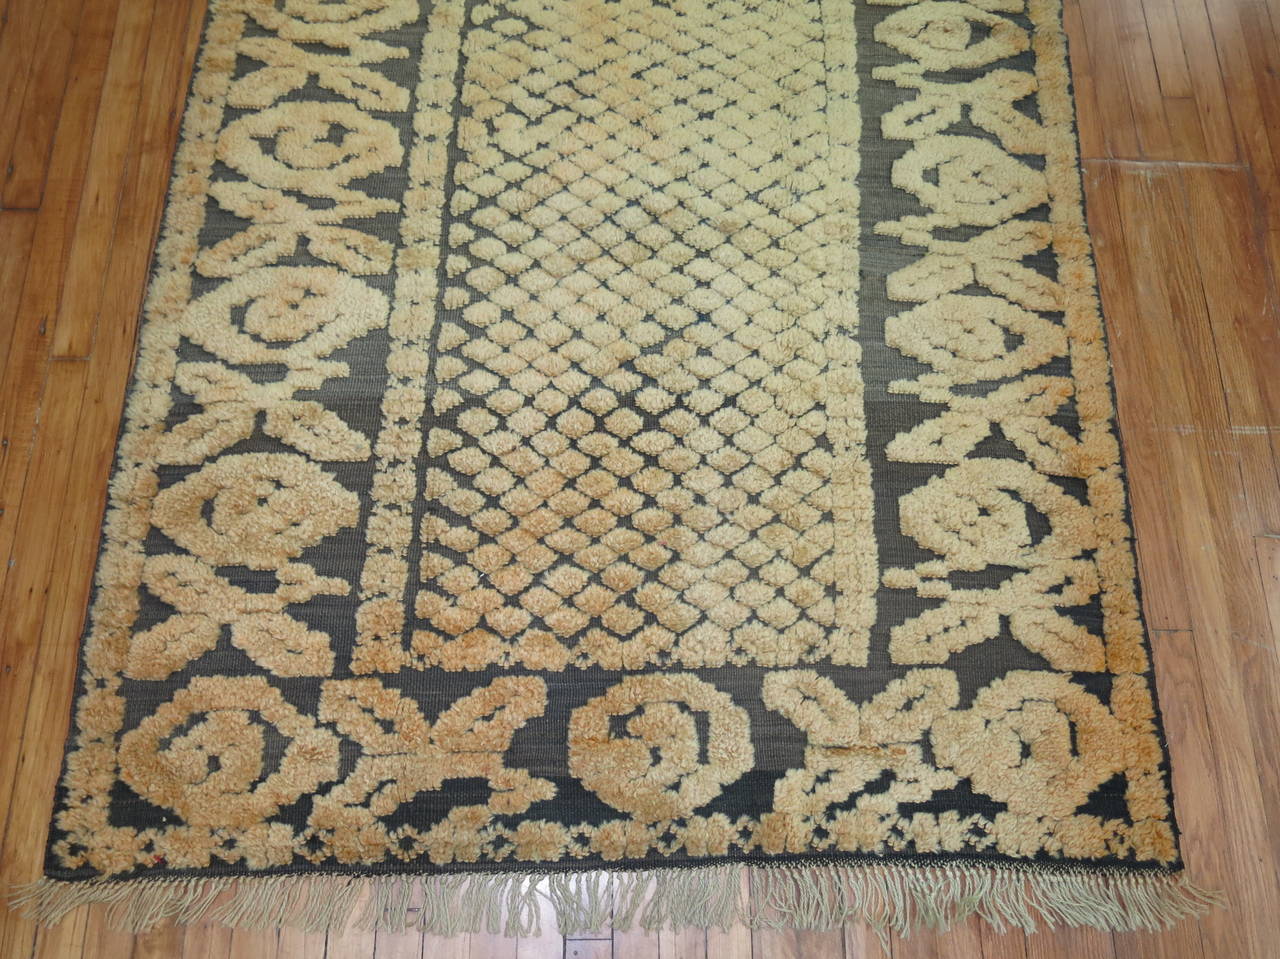 Tapis africain inspirant du milieu du siècle, avec un velours inhabituel de couleur cantaloup sur une base texturée à tissage plat. Une grande créativité de la part du tisserand.